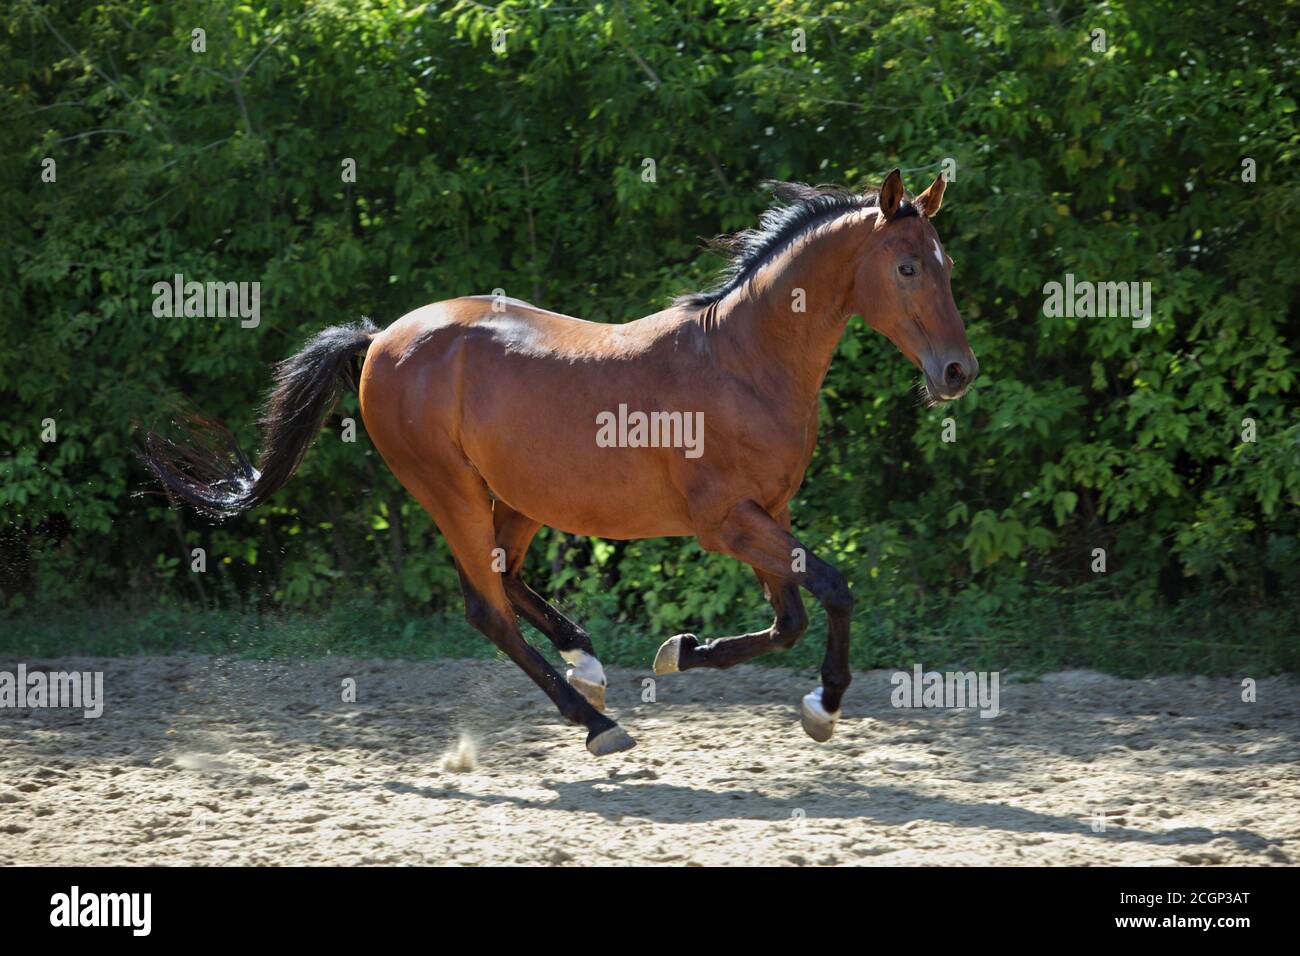 Kastanienpferd läuft in Ranch Paddock auf dem grünen Hintergrund Stockfoto